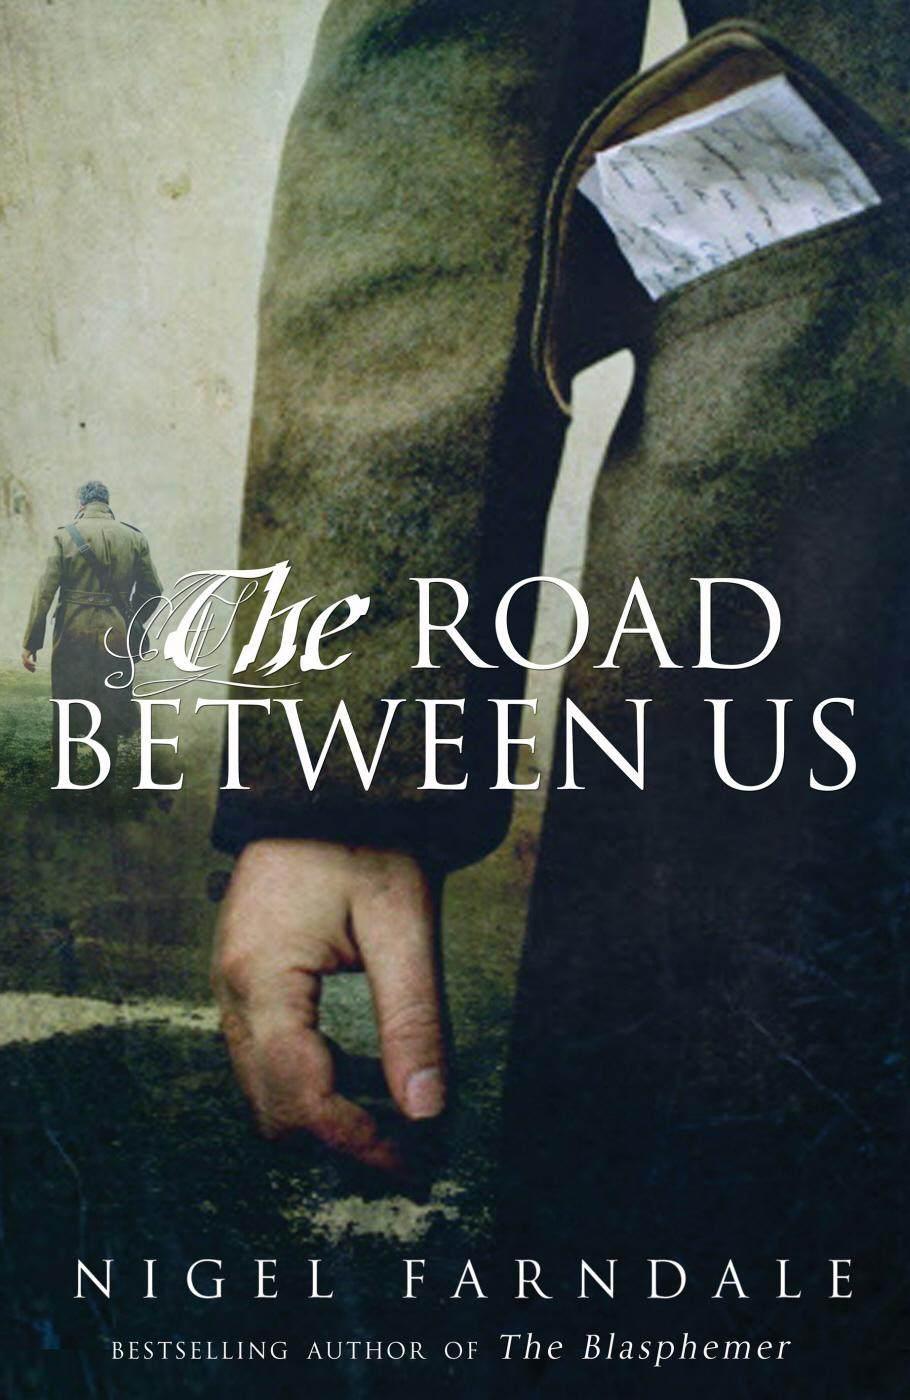 The Road Between Us by Nigel Farndale